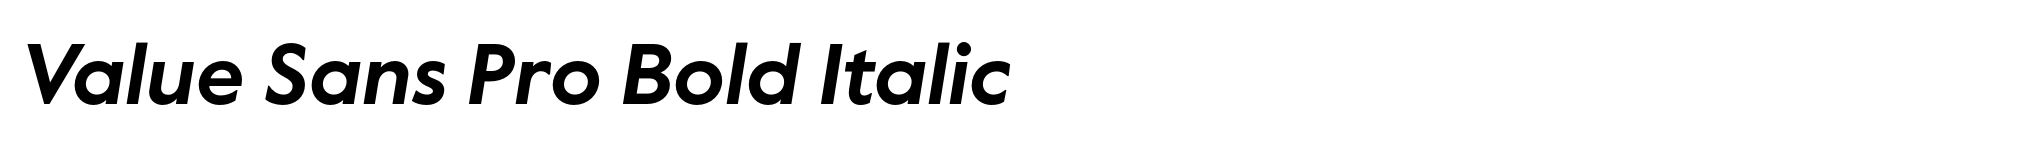 Value Sans Pro Bold Italic image